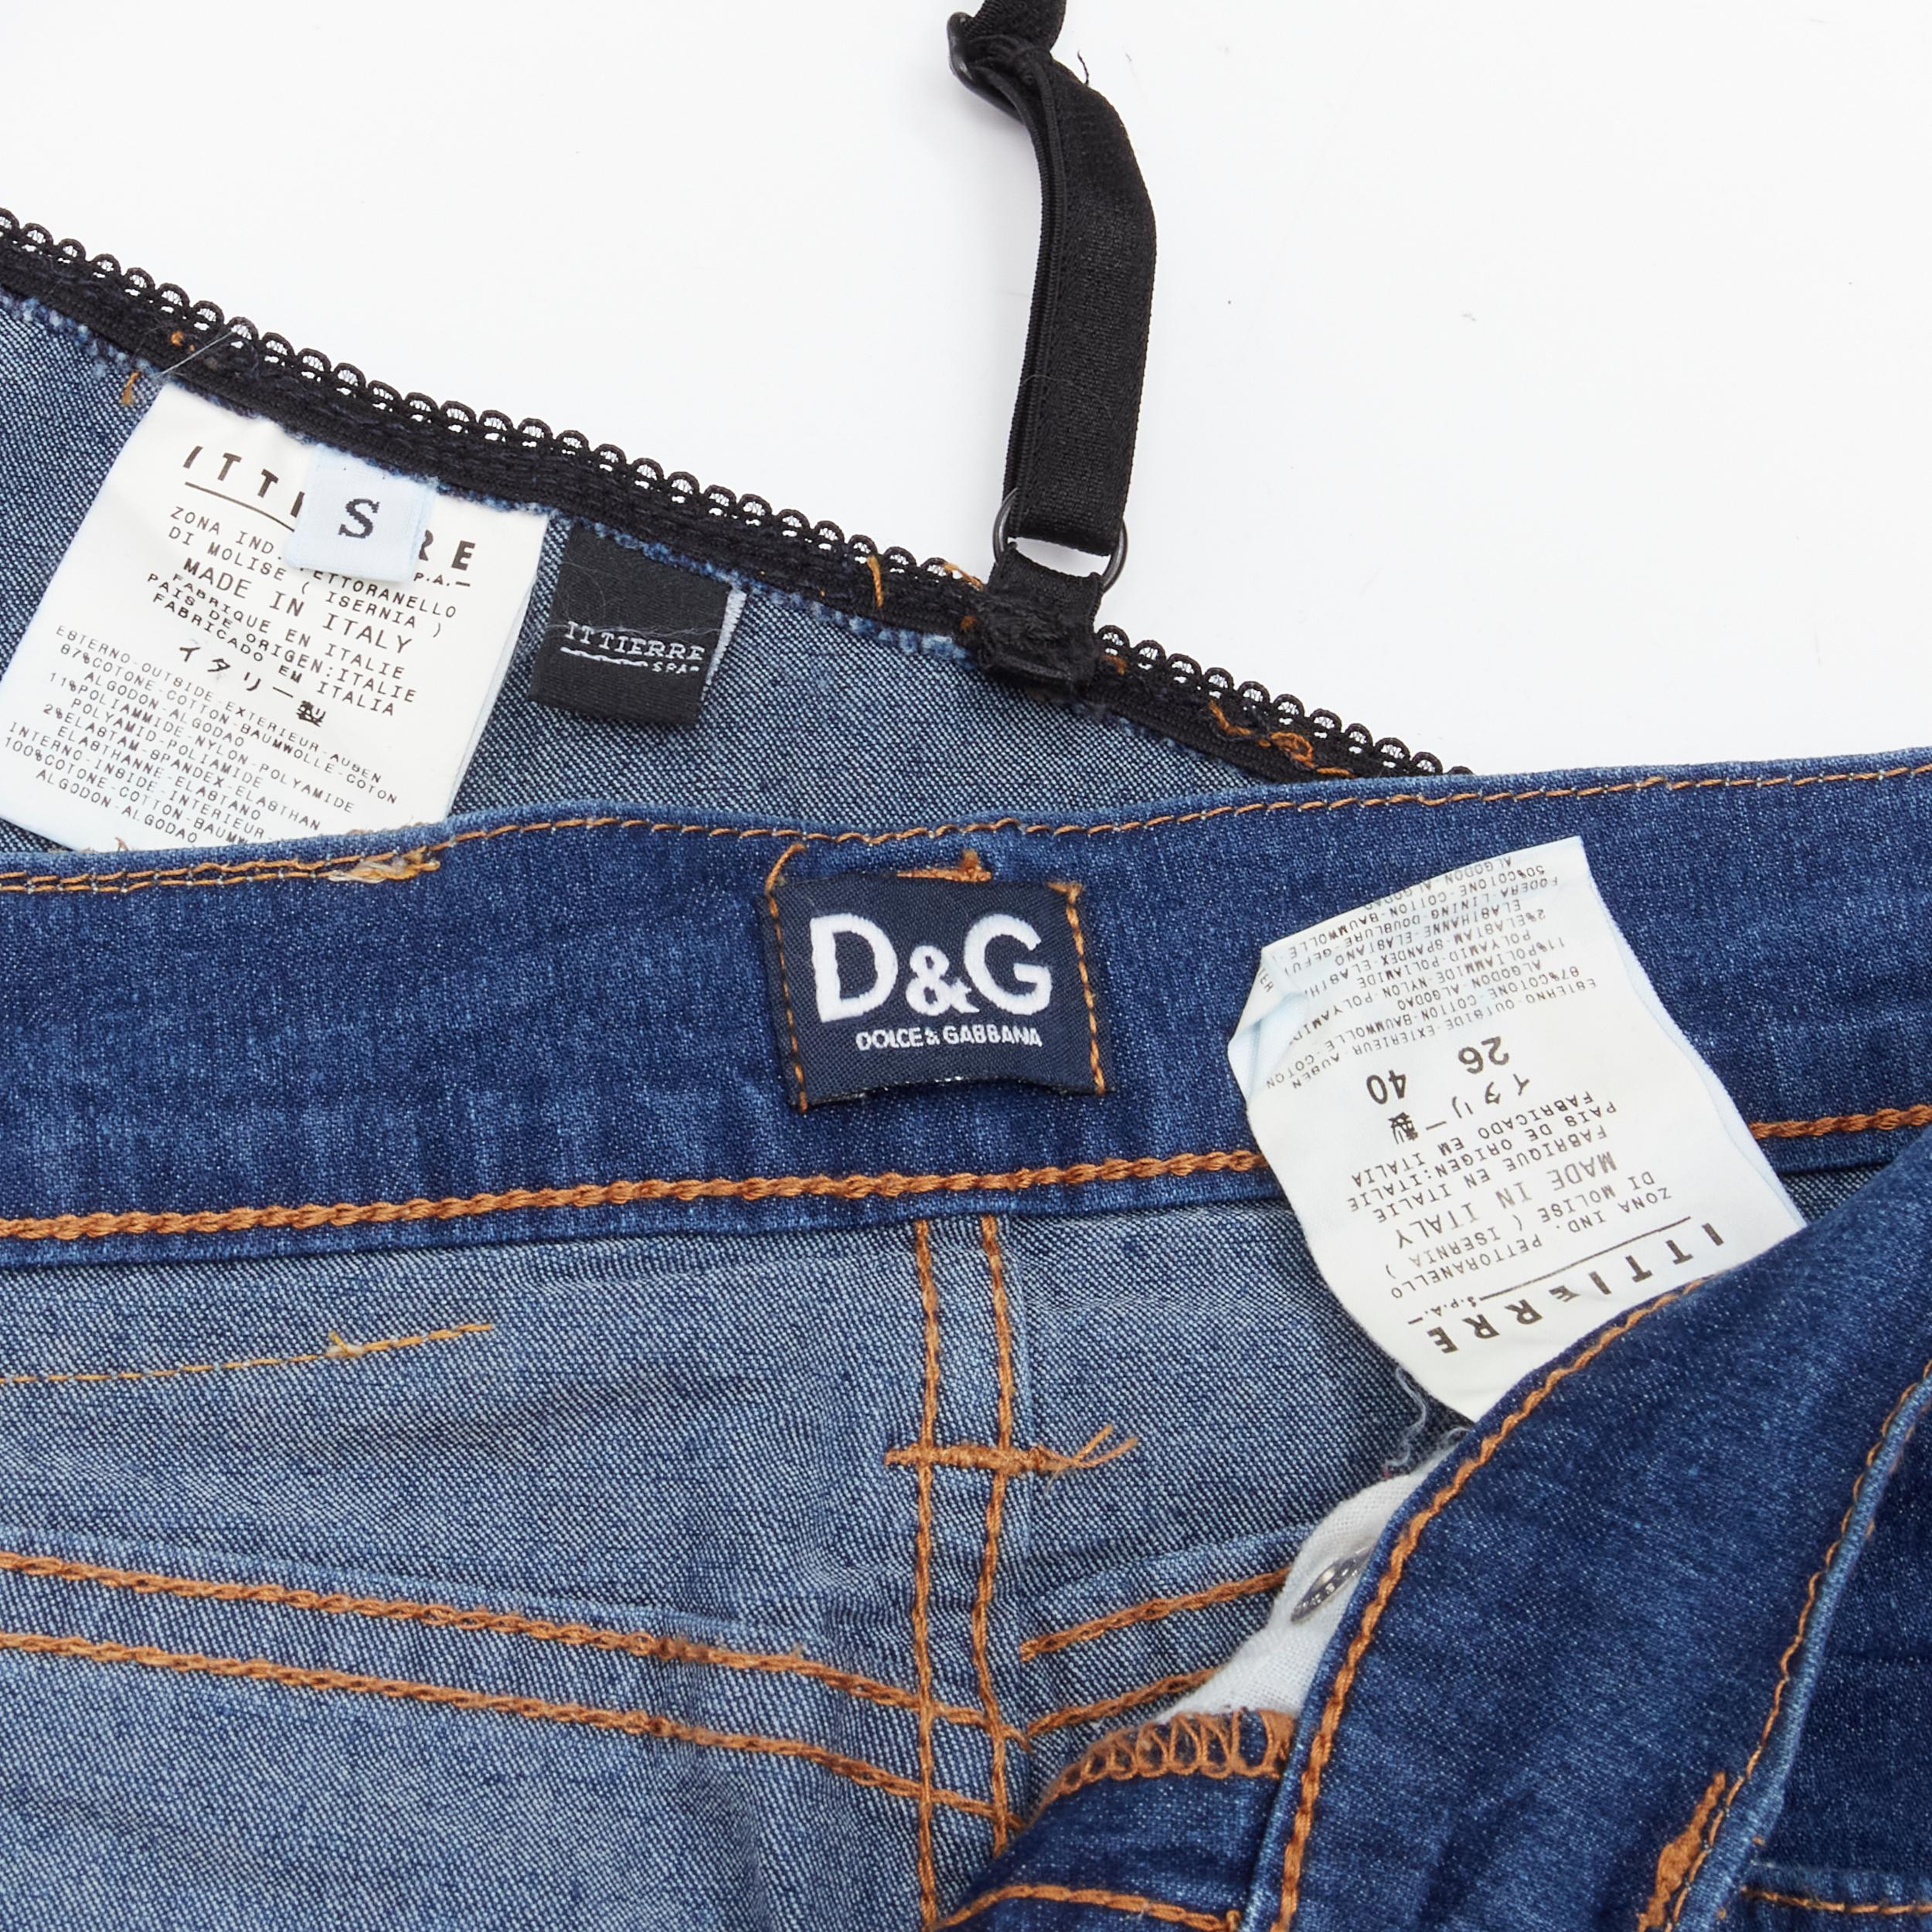 D&G DOLCE GABBANA 2001 Y2K blue denim overstitch bralette knee jeans S 26